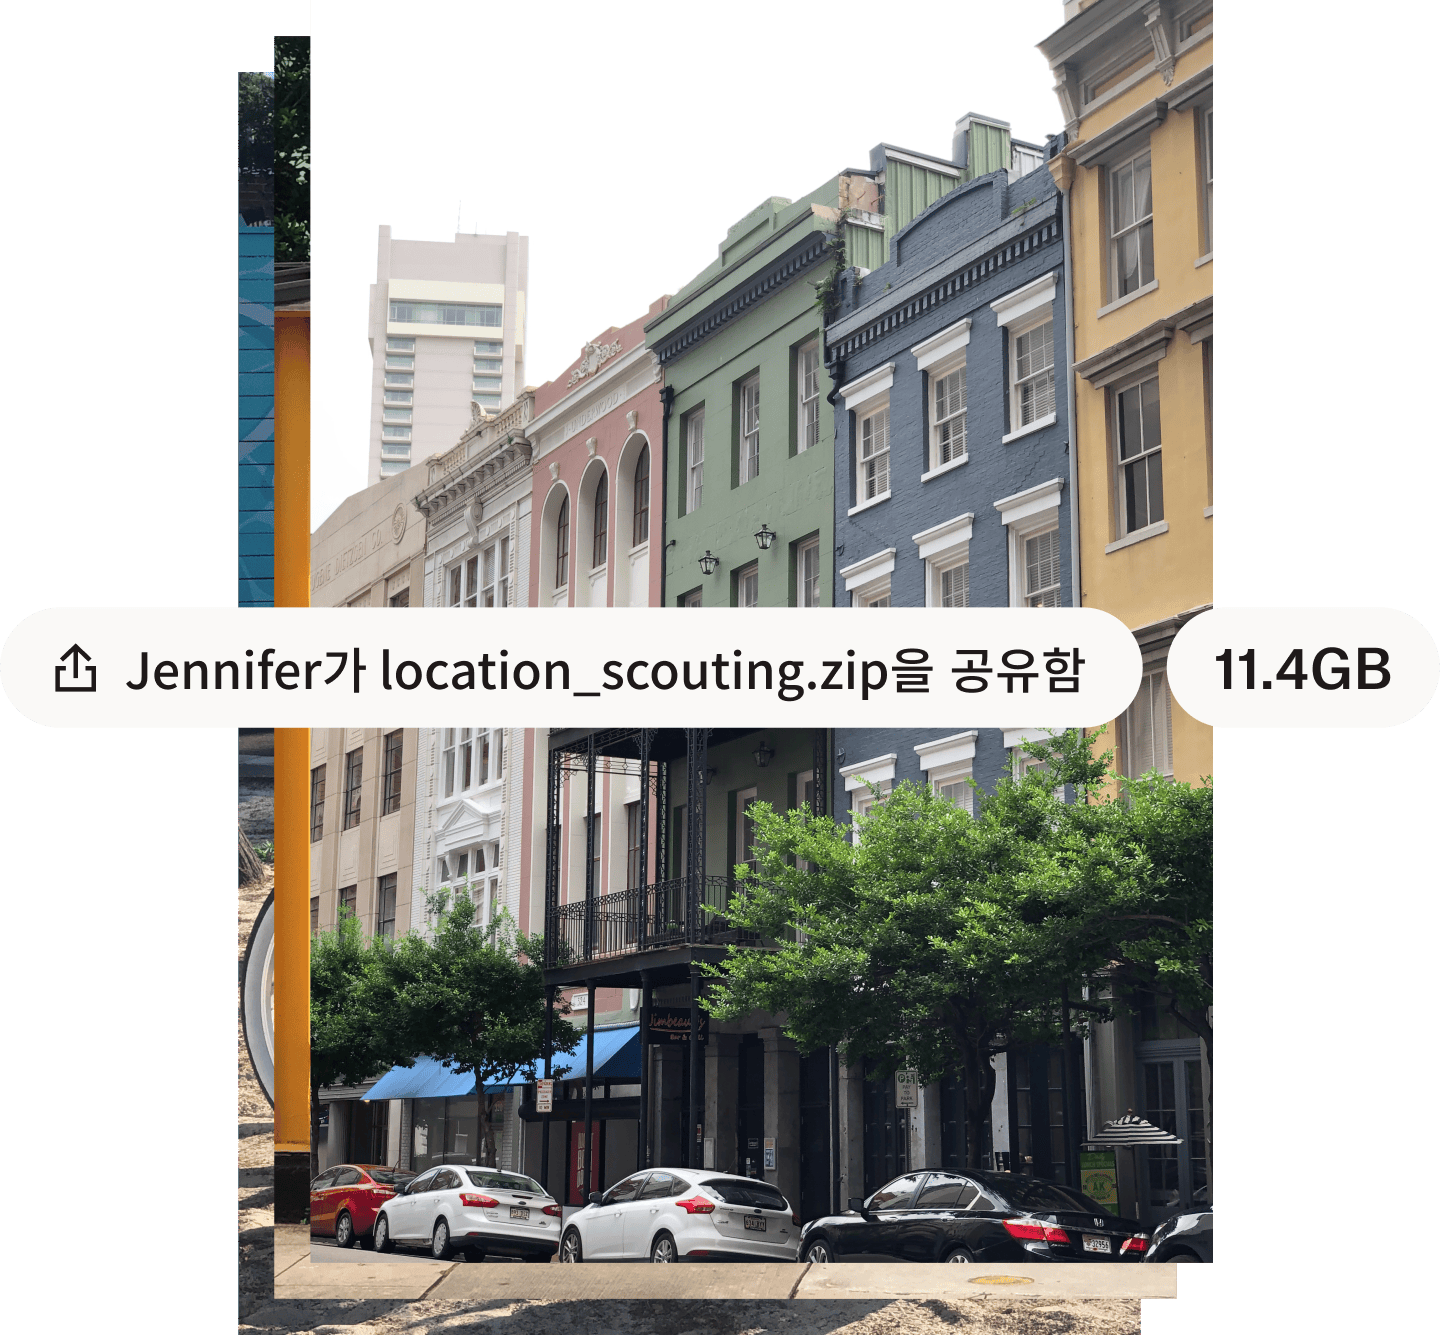 형형색색의 건물들이 있는 도시 거리의 사진과 흰색 말풍선에 쓰인 파일 이름과 파일 크기